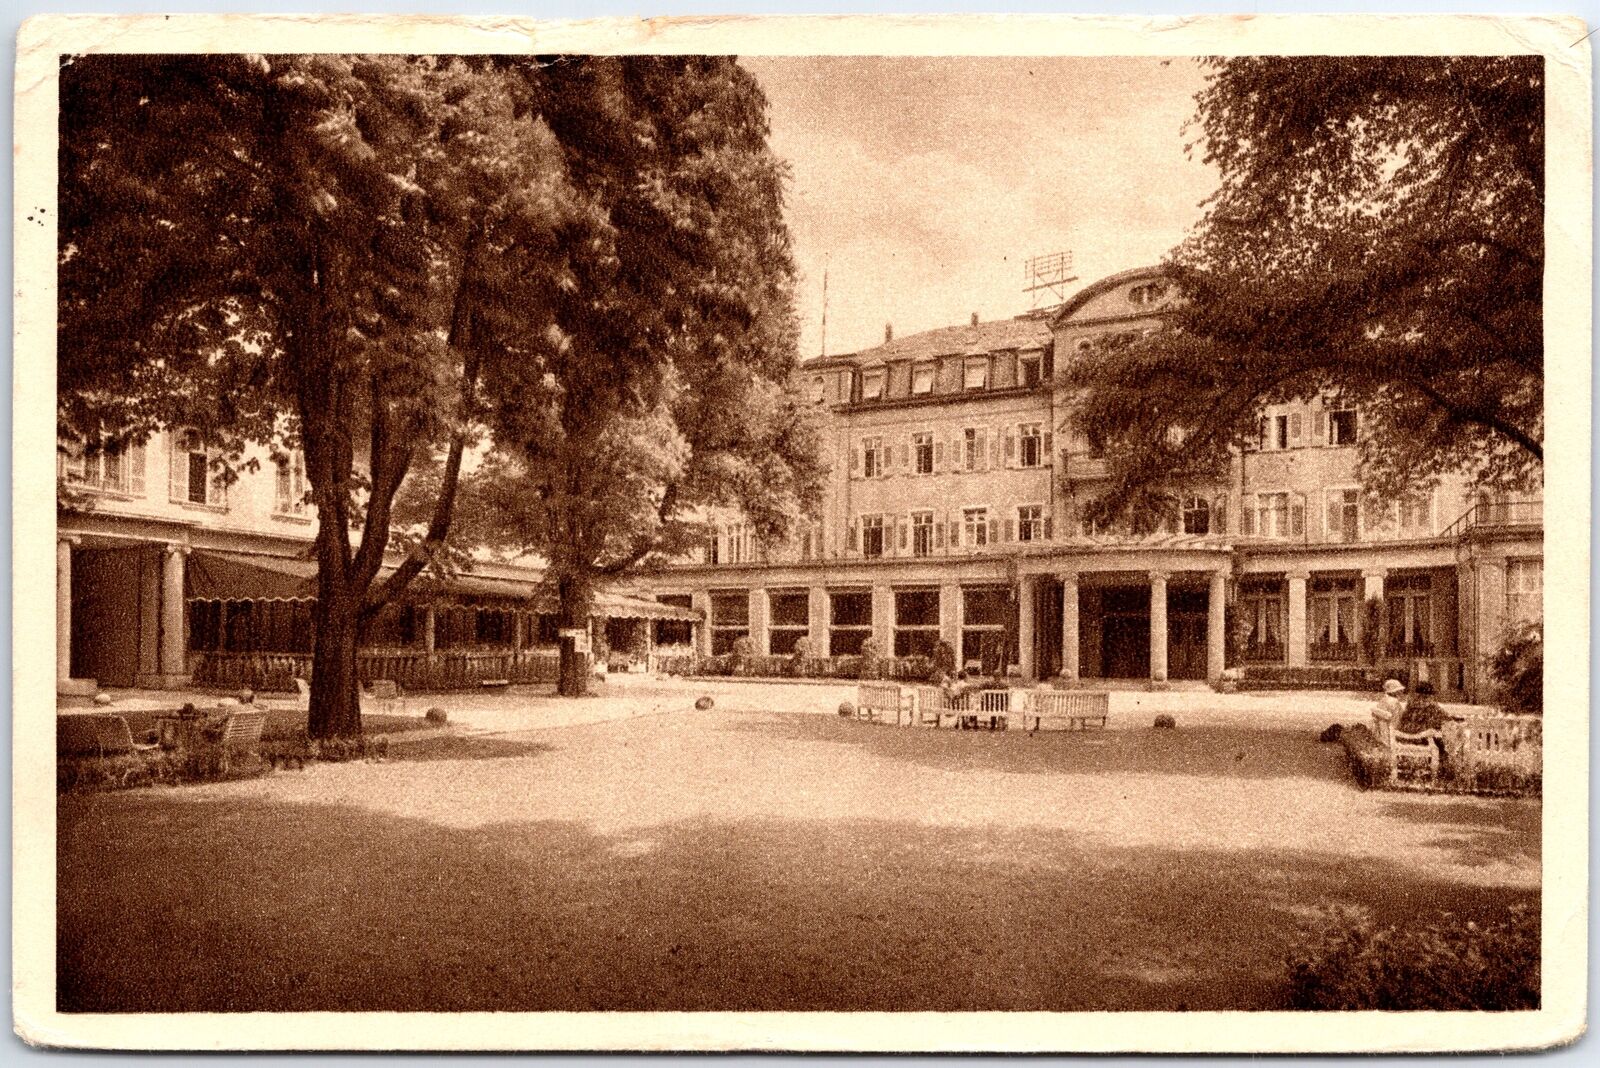 VINTAGE POSTCARD COURTYARD OF THE EUROPAHOF HOTEL IN HEIDELBERG GERMANY 1931